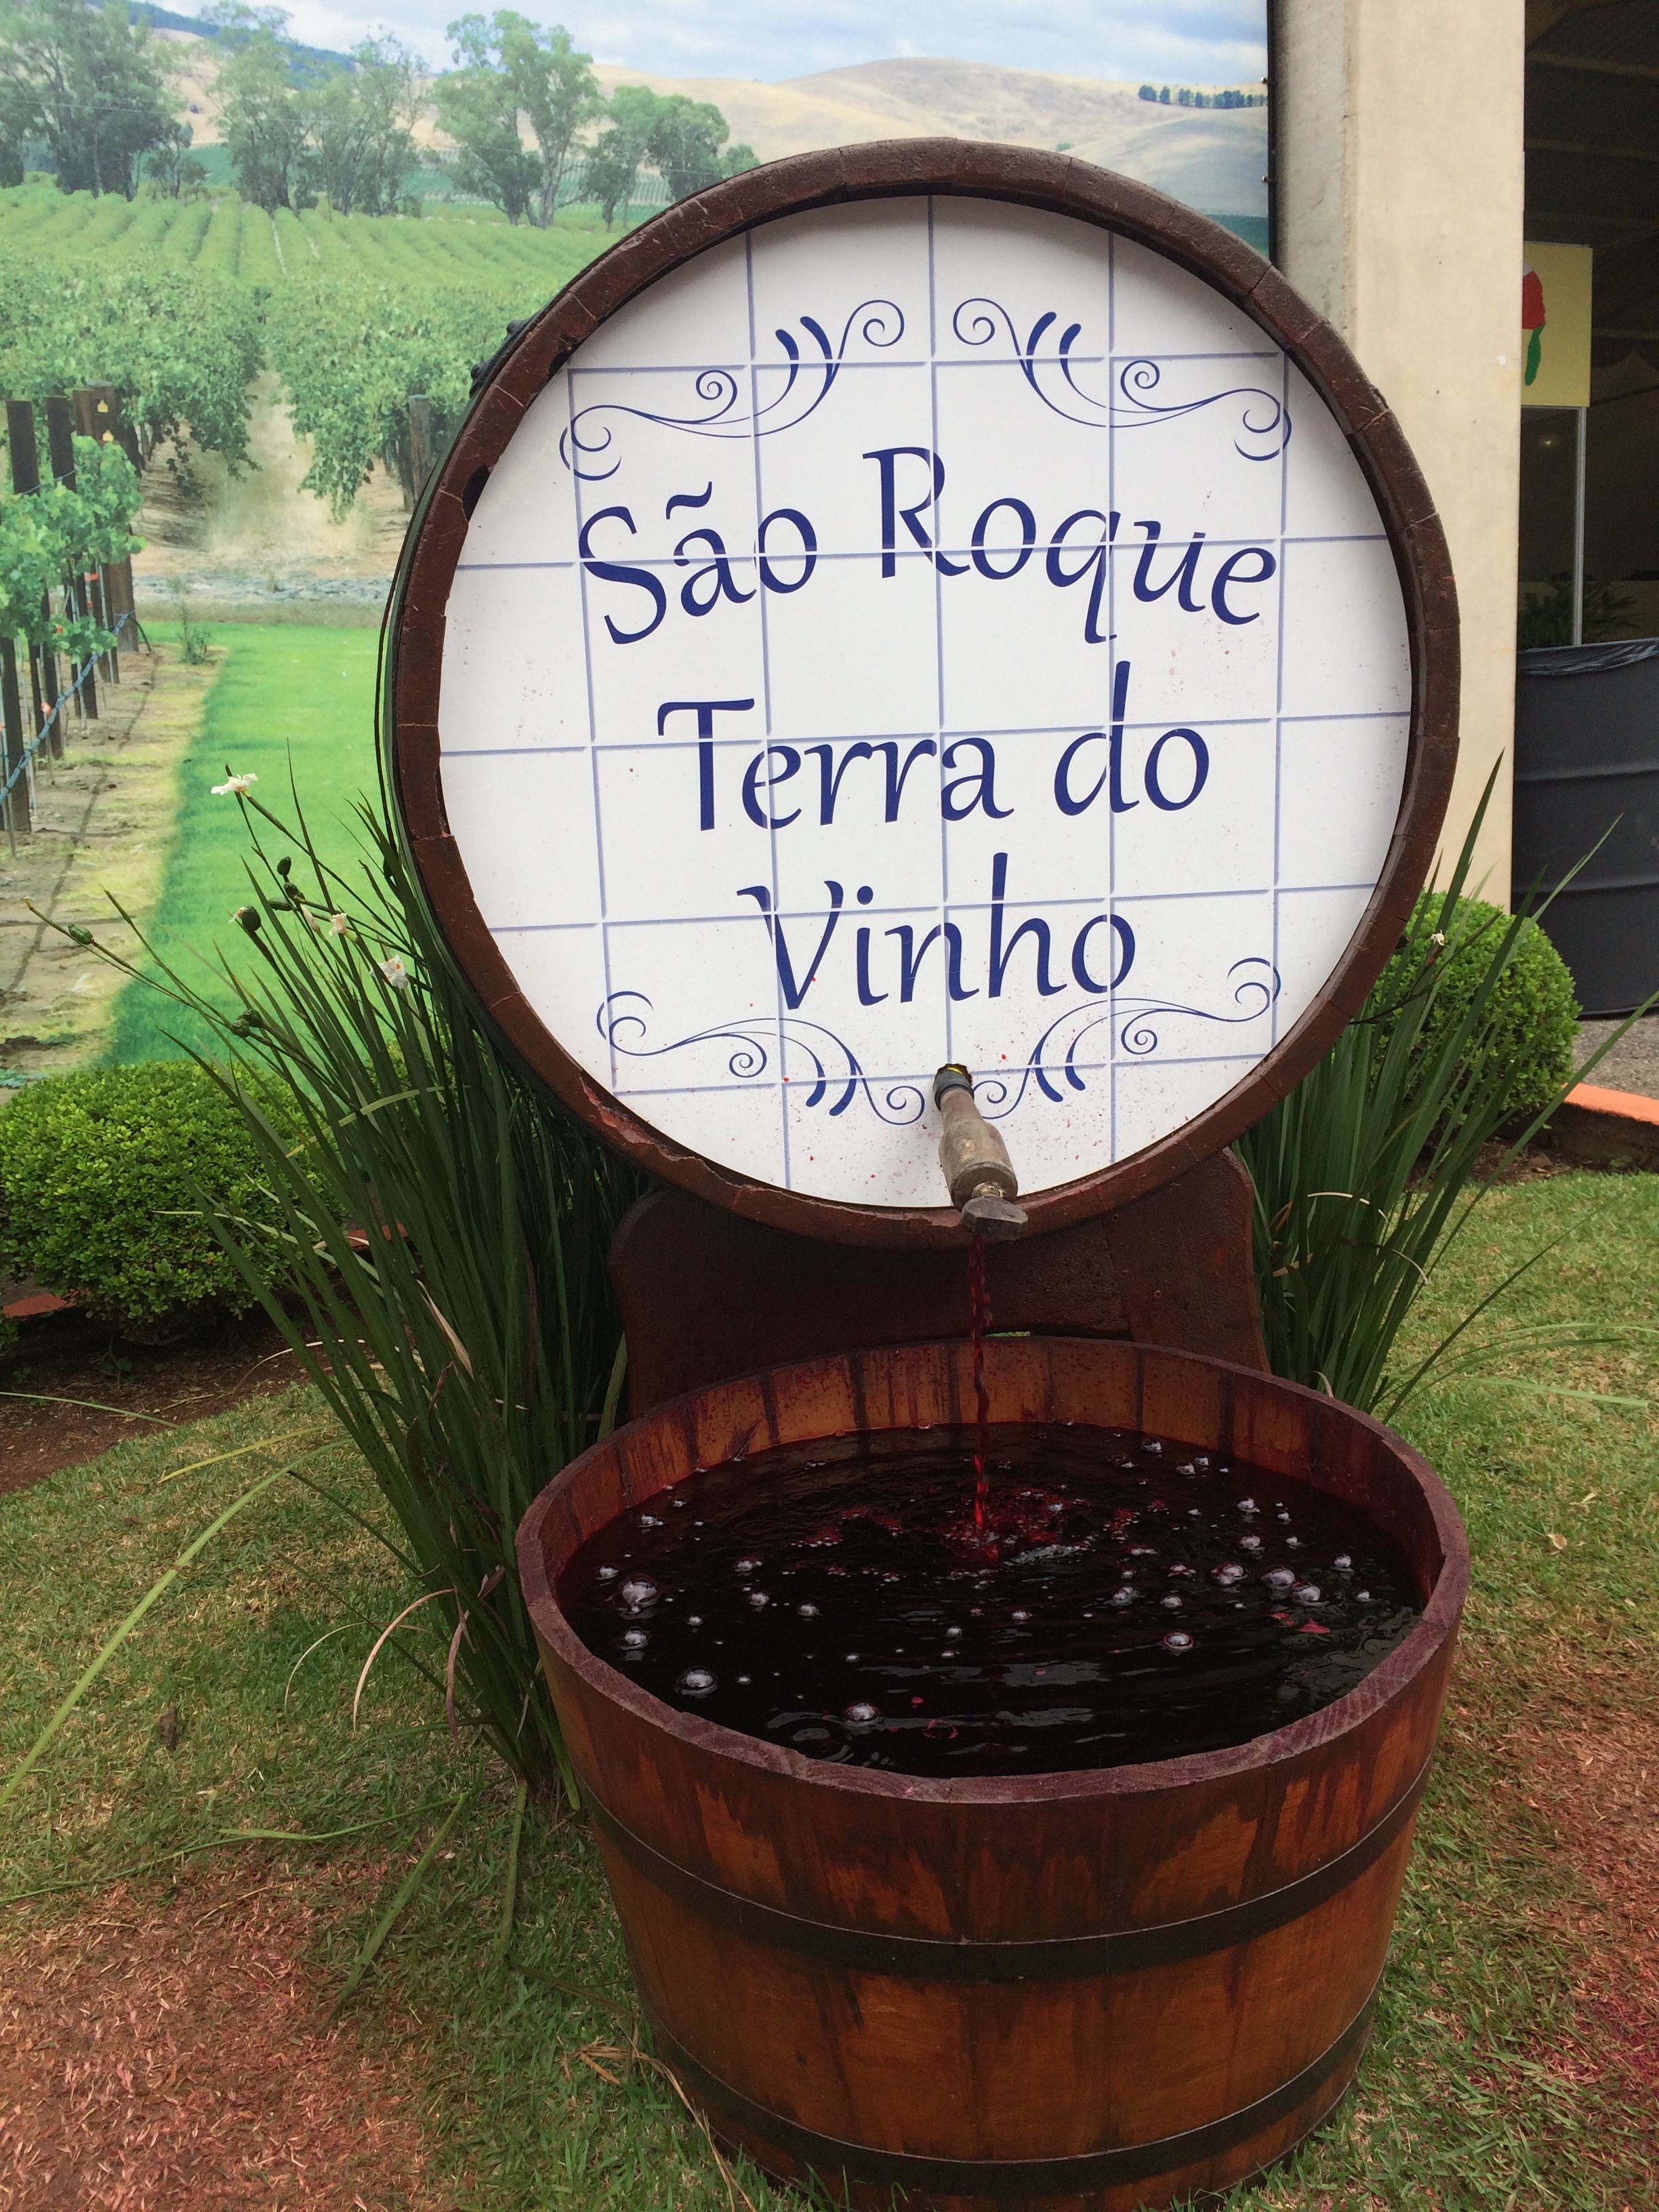 SÃO ROQUE- ROTA DO VINHO (DAY USE)